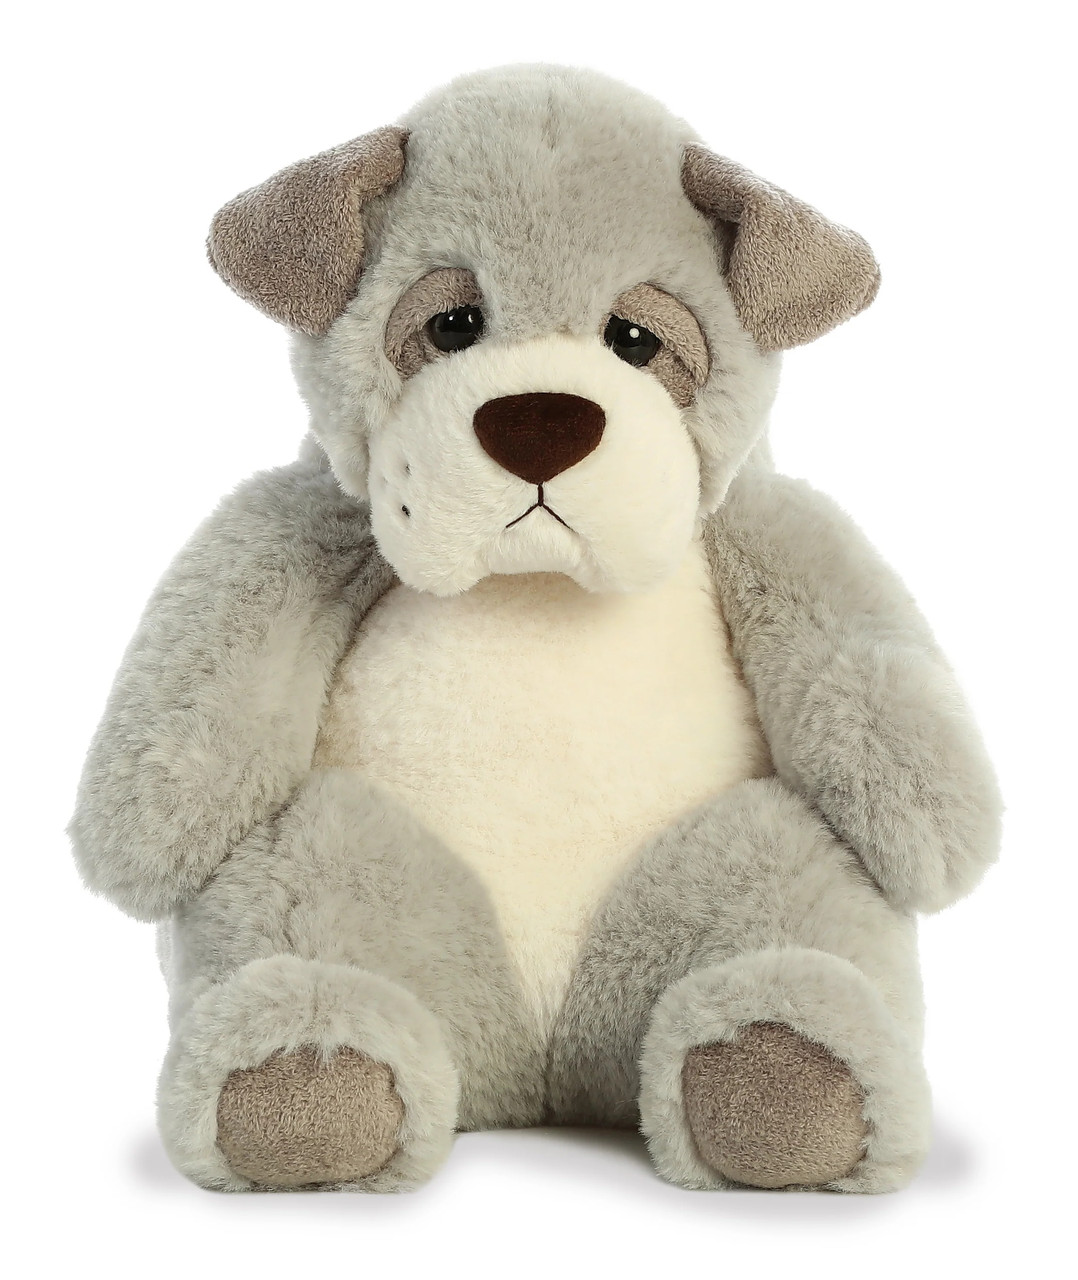 Sluuumpy Da Dog, Plush 15 Stuffed Animal Toy by Aurora - Little